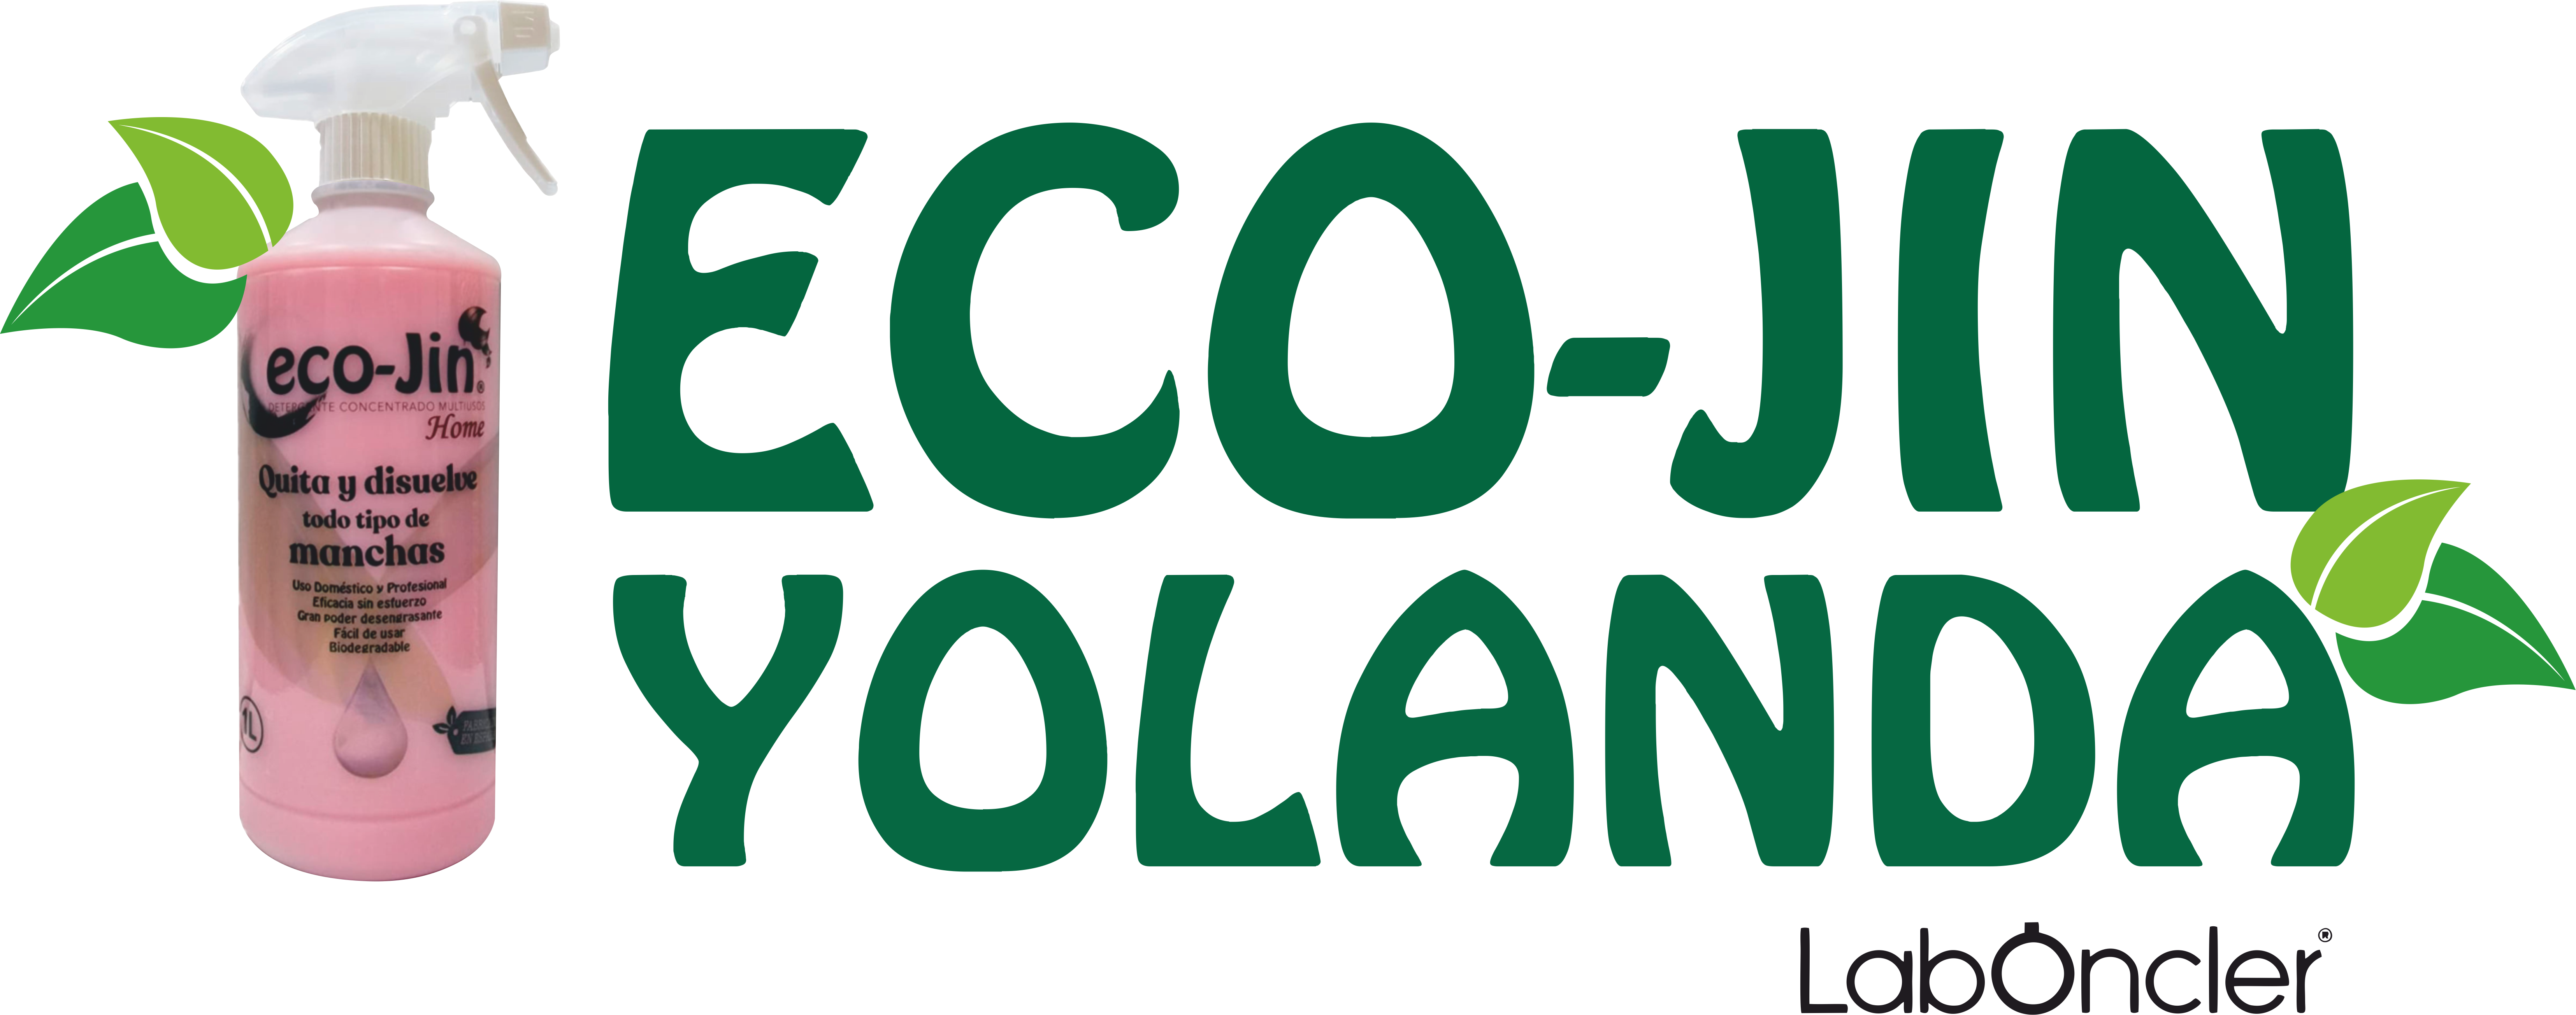 eco-jin – Detergente Concentrado Multiusos